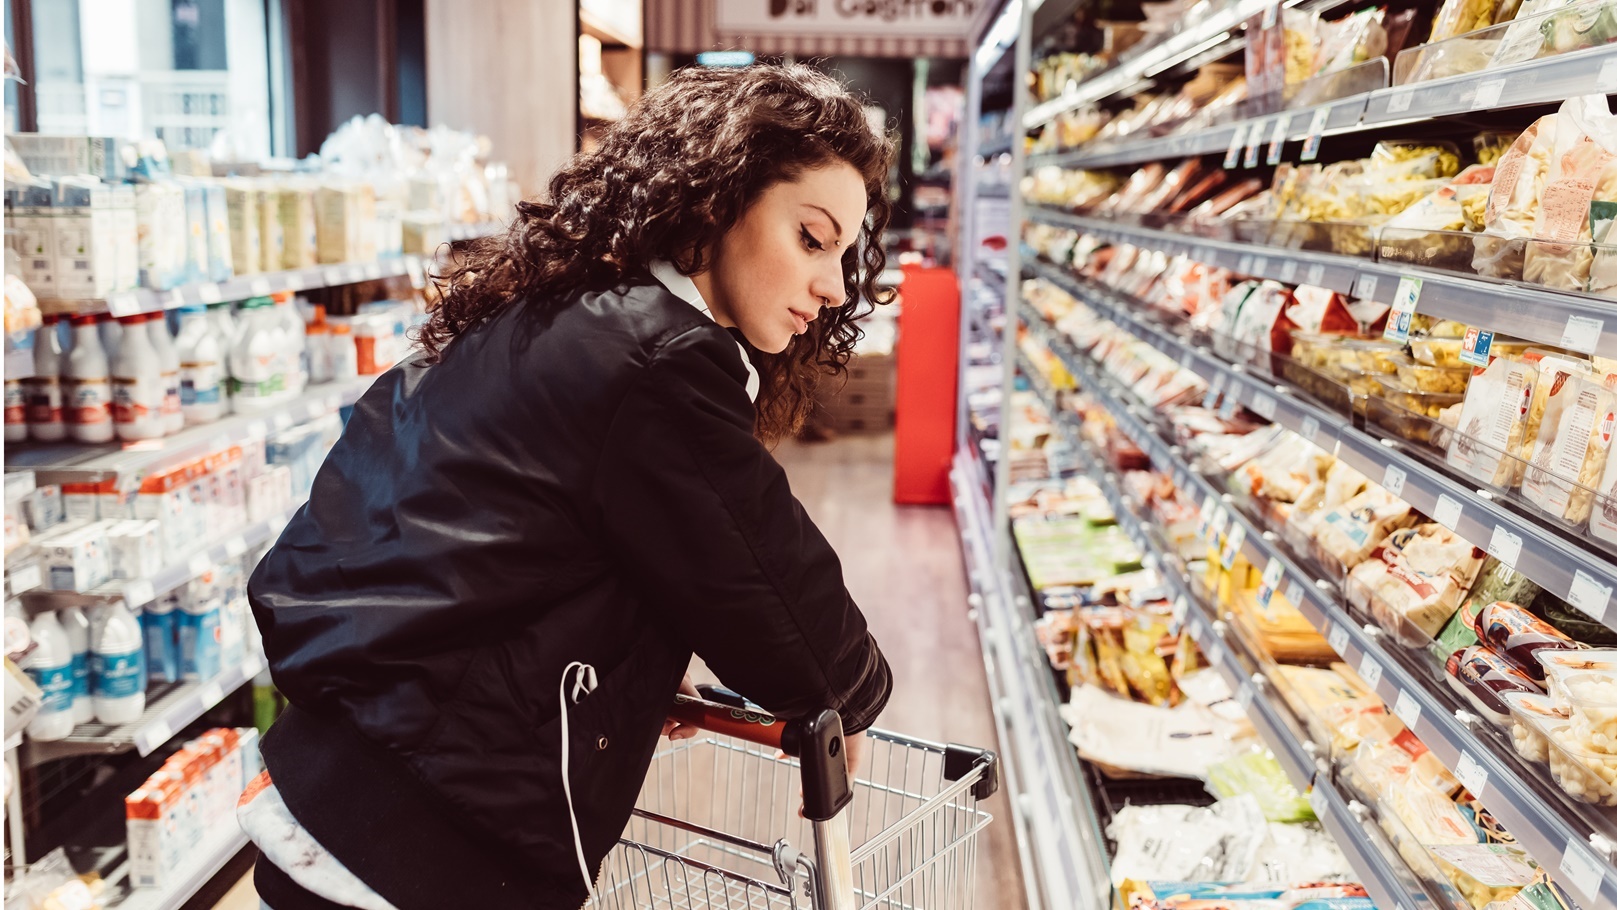 woman-pushing-shopping-cart-at-supermarket-2022-02-03-15-56-39-utc